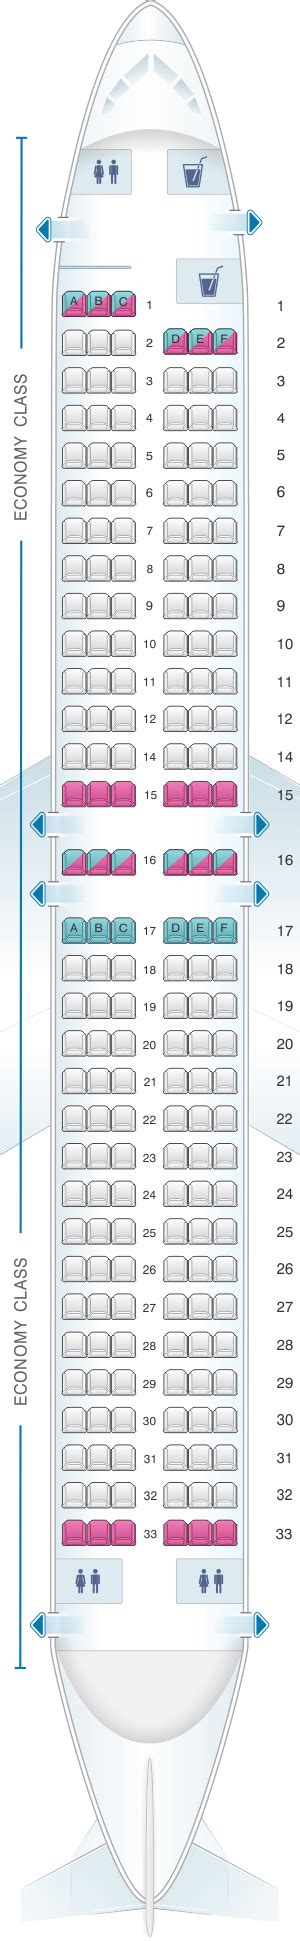 mapa de asientos corendon airlines boeing   plano del avion seatmaestroes